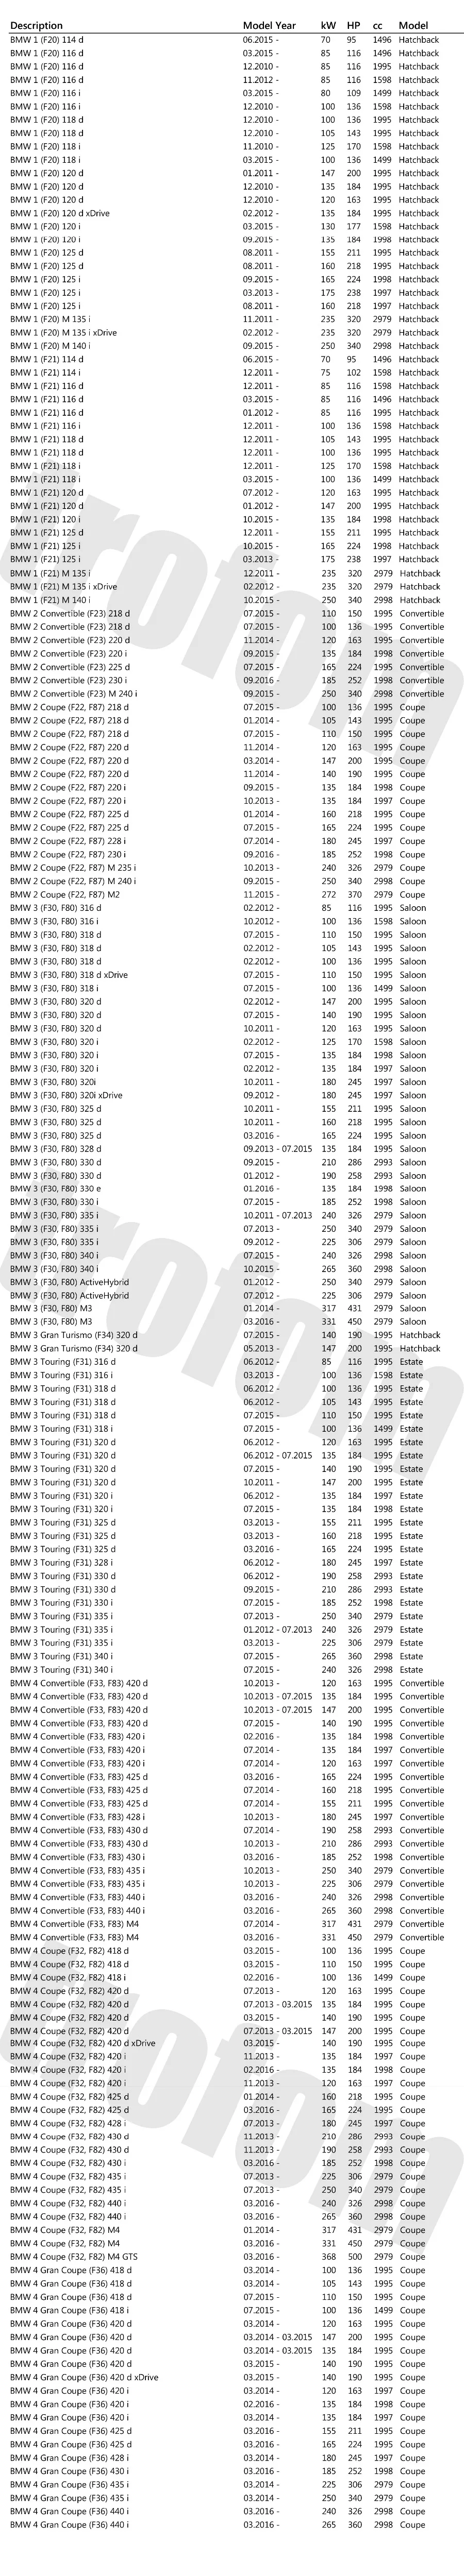 ABS Скорость Сенсор пульт дистанционного управления для BMW 1/2/3/4 серии F20 F21 F23 F22 F30 F31 F32 F33 F34 F36 F80 F82 F83 F87 34526791224 34526869320